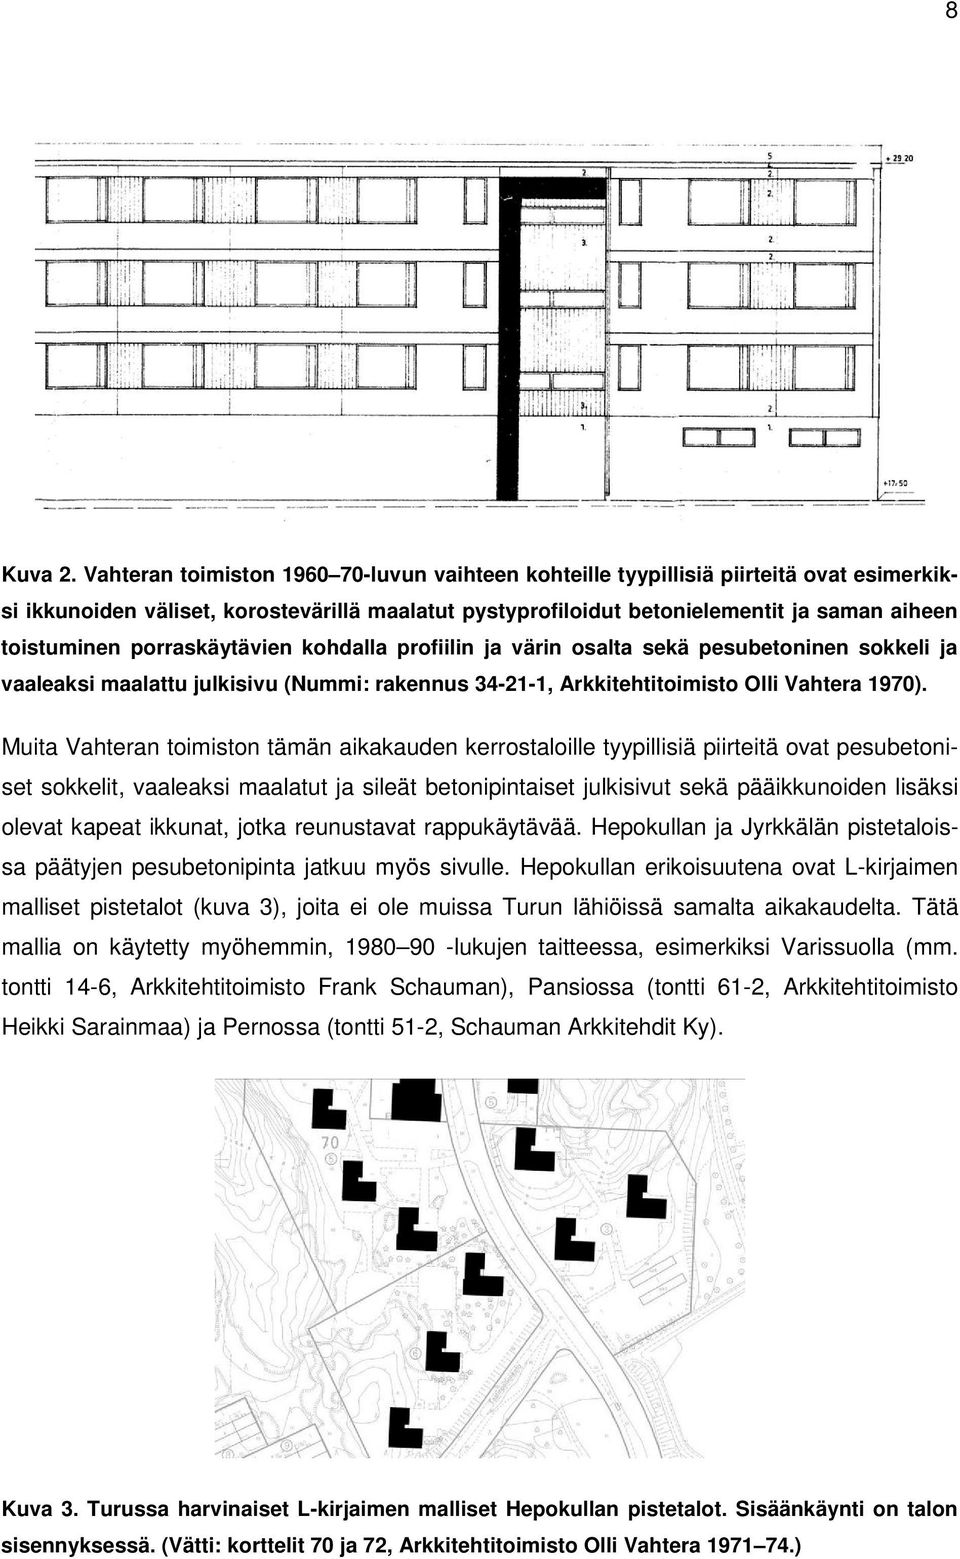 porraskäytävien kohdalla profiilin ja värin osalta sekä pesubetoninen sokkeli ja vaaleaksi maalattu julkisivu (Nummi: rakennus 34-21-1, Arkkitehtitoimisto Olli Vahtera 1970).